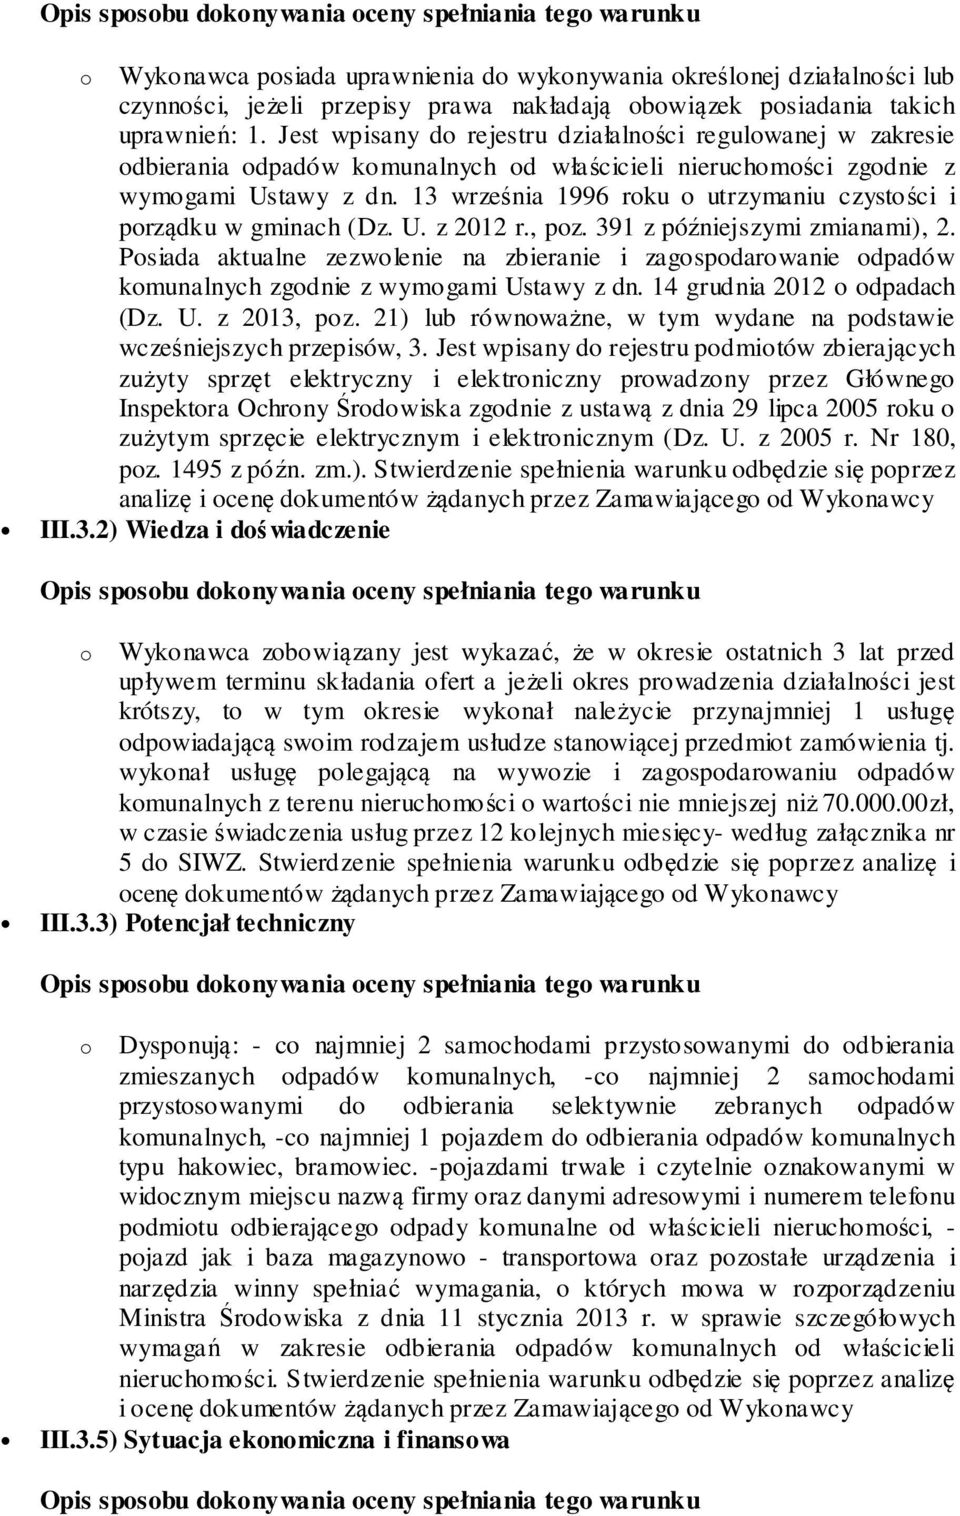 13 września 1996 roku o utrzymaniu czystości i porządku w gminach (Dz. U. z 2012 r., poz. 391 z późniejszymi zmianami), 2.